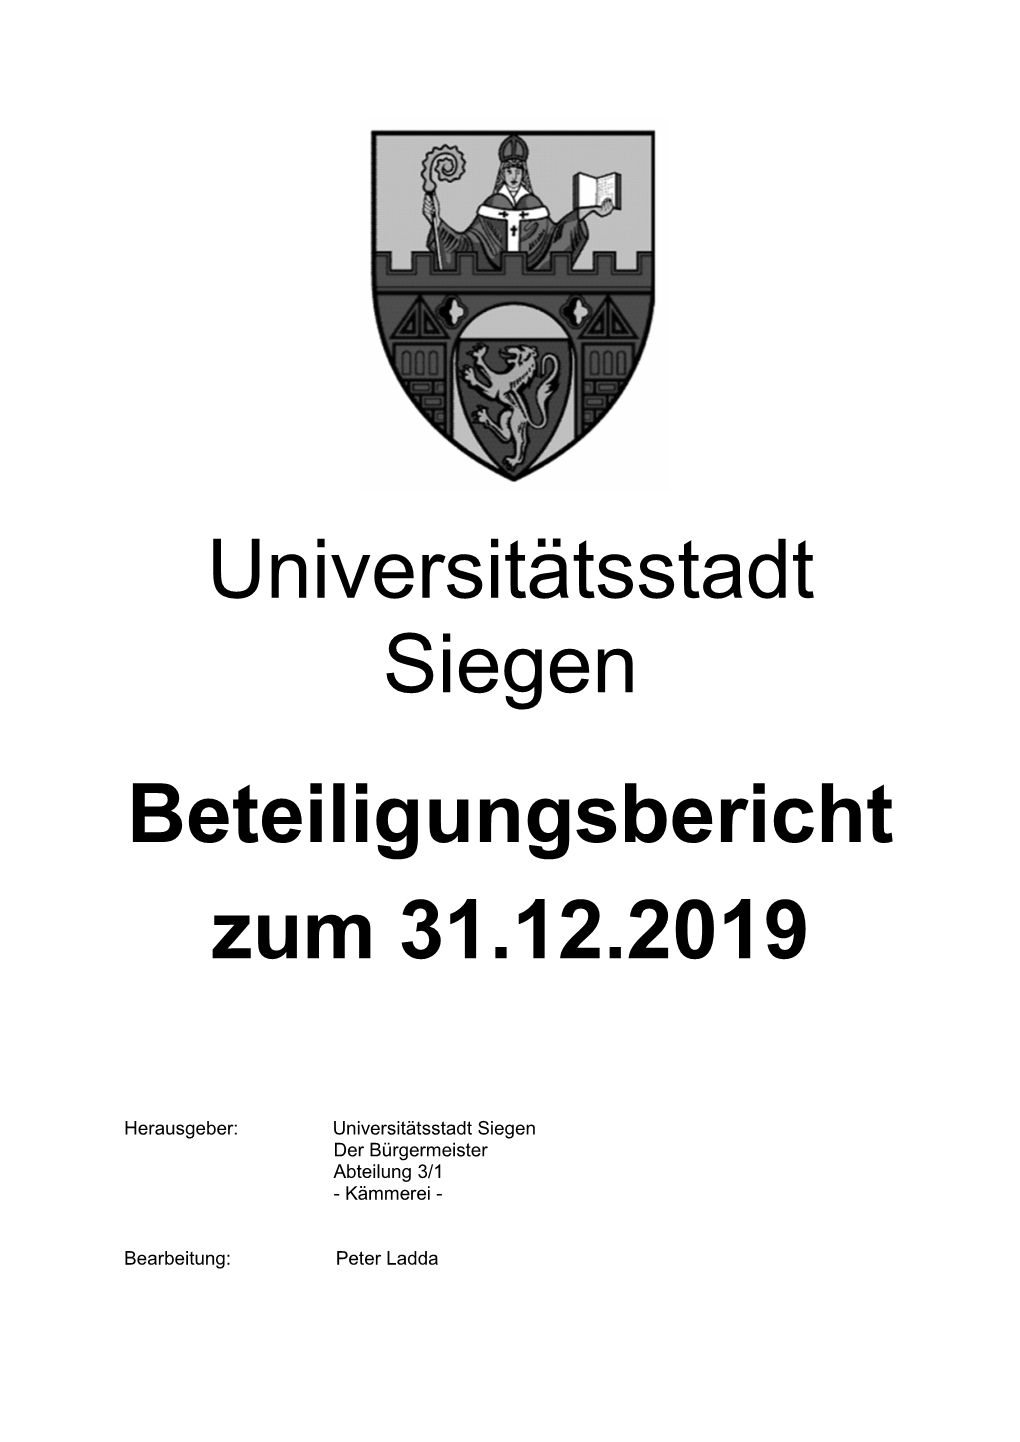 Universitätsstadt Siegen Beteiligungsbericht Zum 31.12.2019